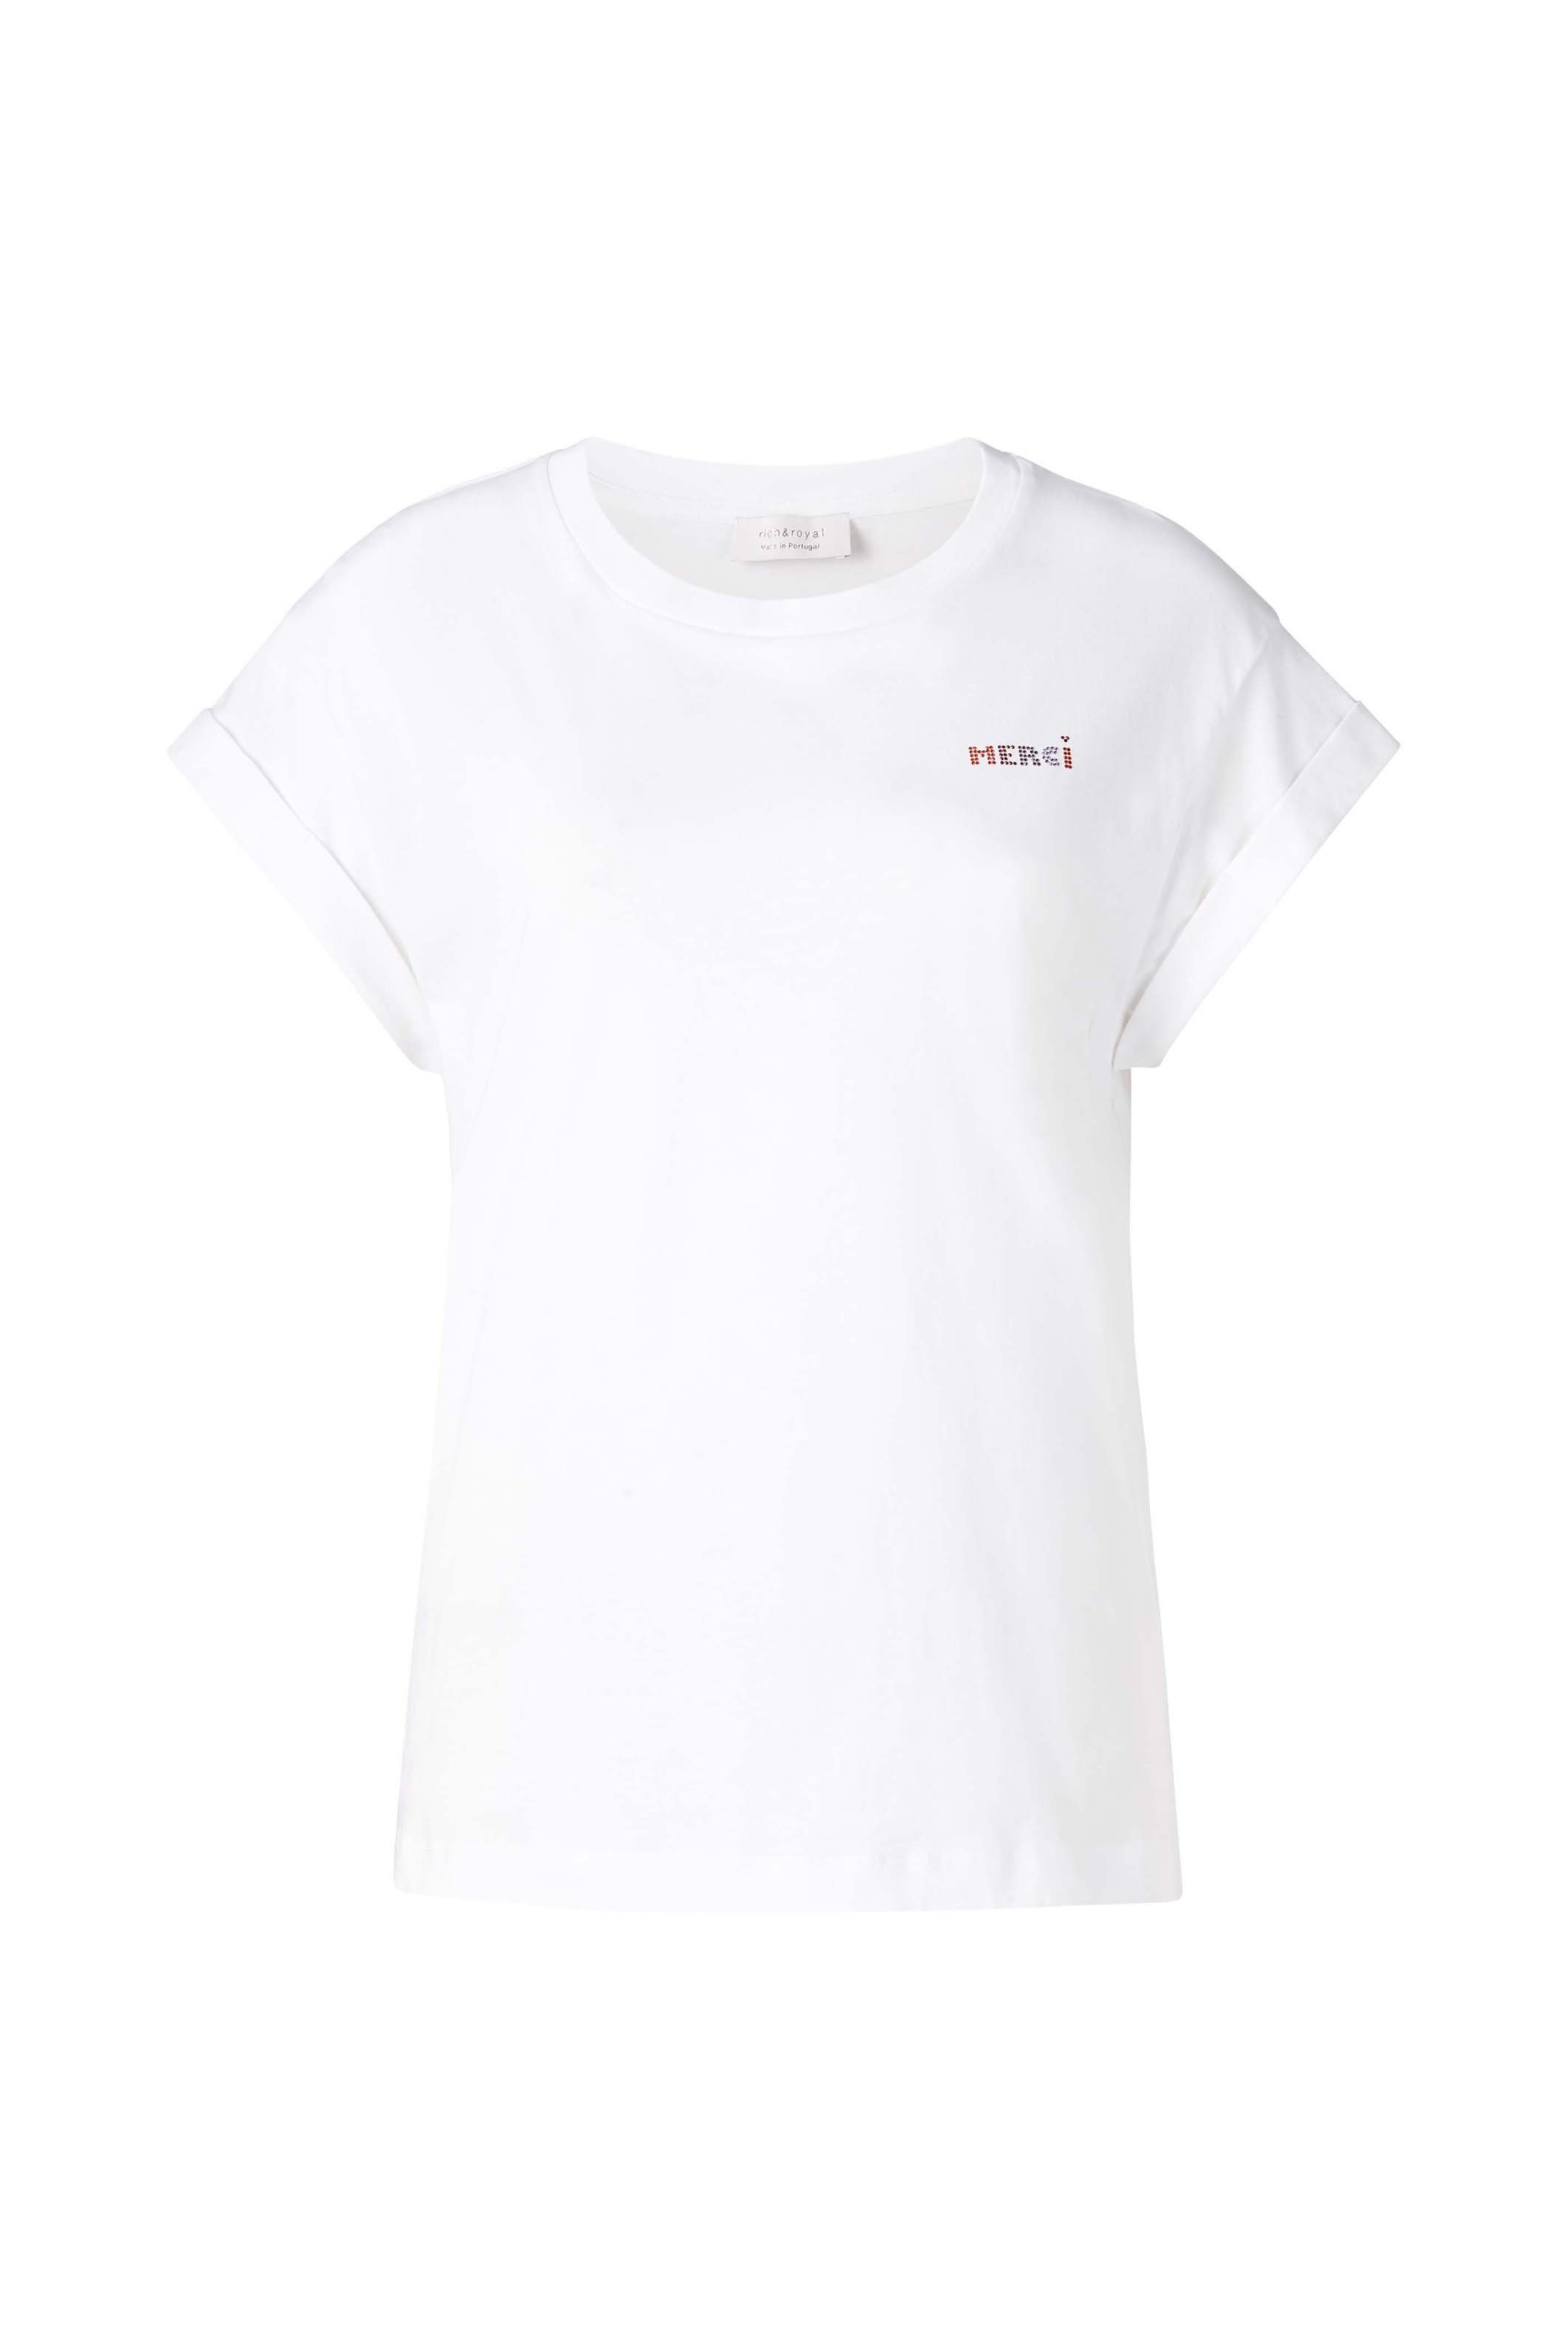 Rich & Royal T-Shirt in mit Glitzer-Print Brusthöhe original weiß